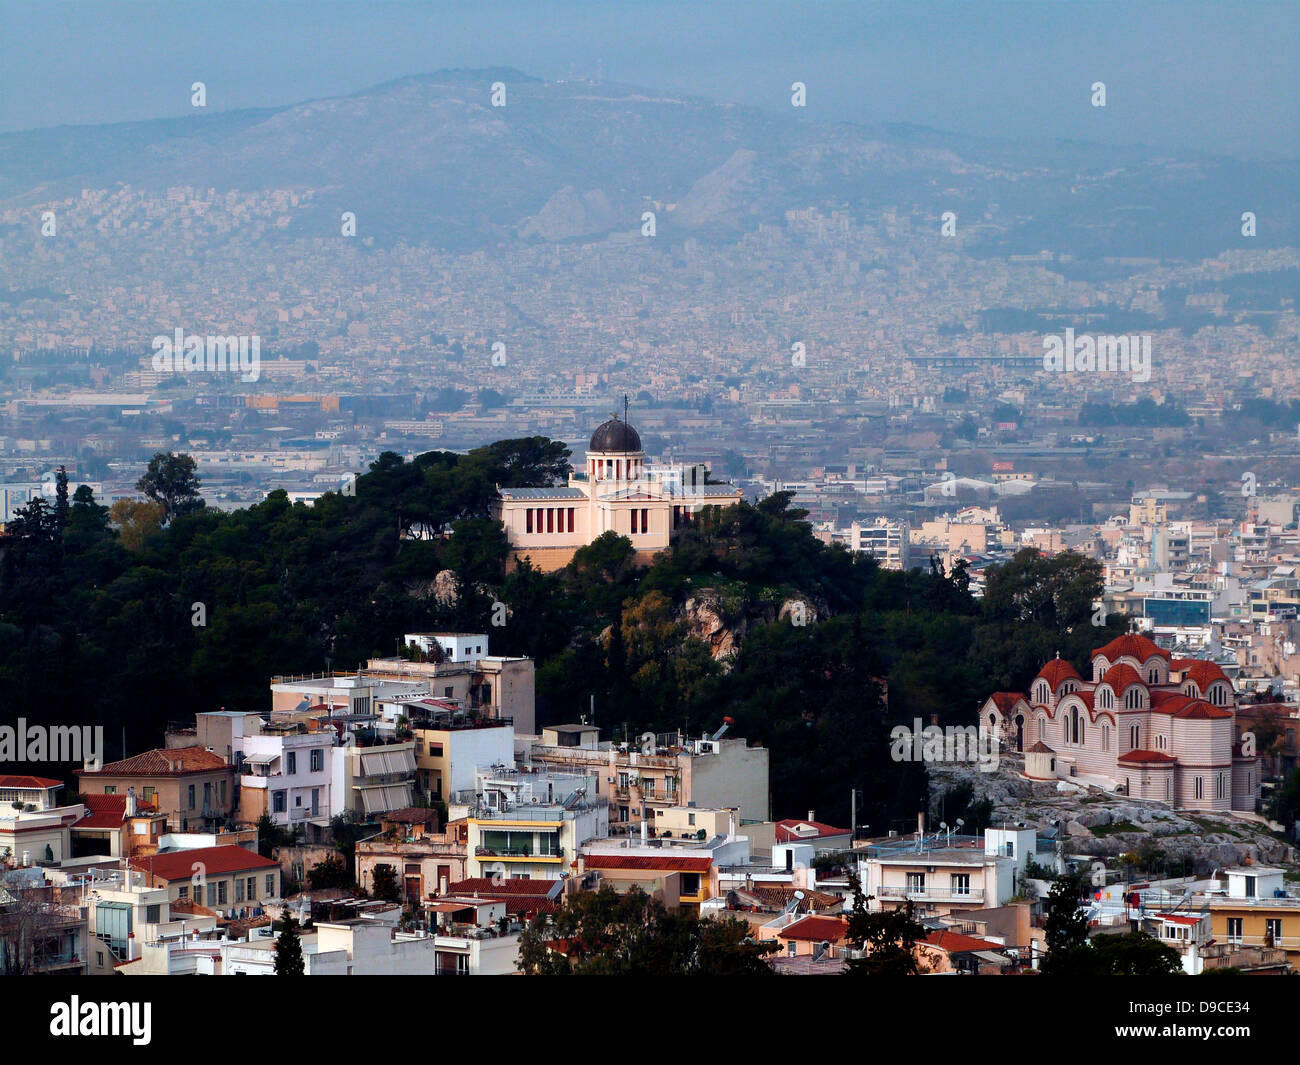 El Observatorio Nacional de Atenas (NOA) es un instituto de investigación en Atenas, Grecia. Fundada en 1842, es la más antigua fundación de investigación en Grecia, ya que fue el primer instituto de investigación científica construida después de que Grecia se independizó en 1829, y uno de los más antiguos institutos de investigación en el sur de Europa. Foto de stock